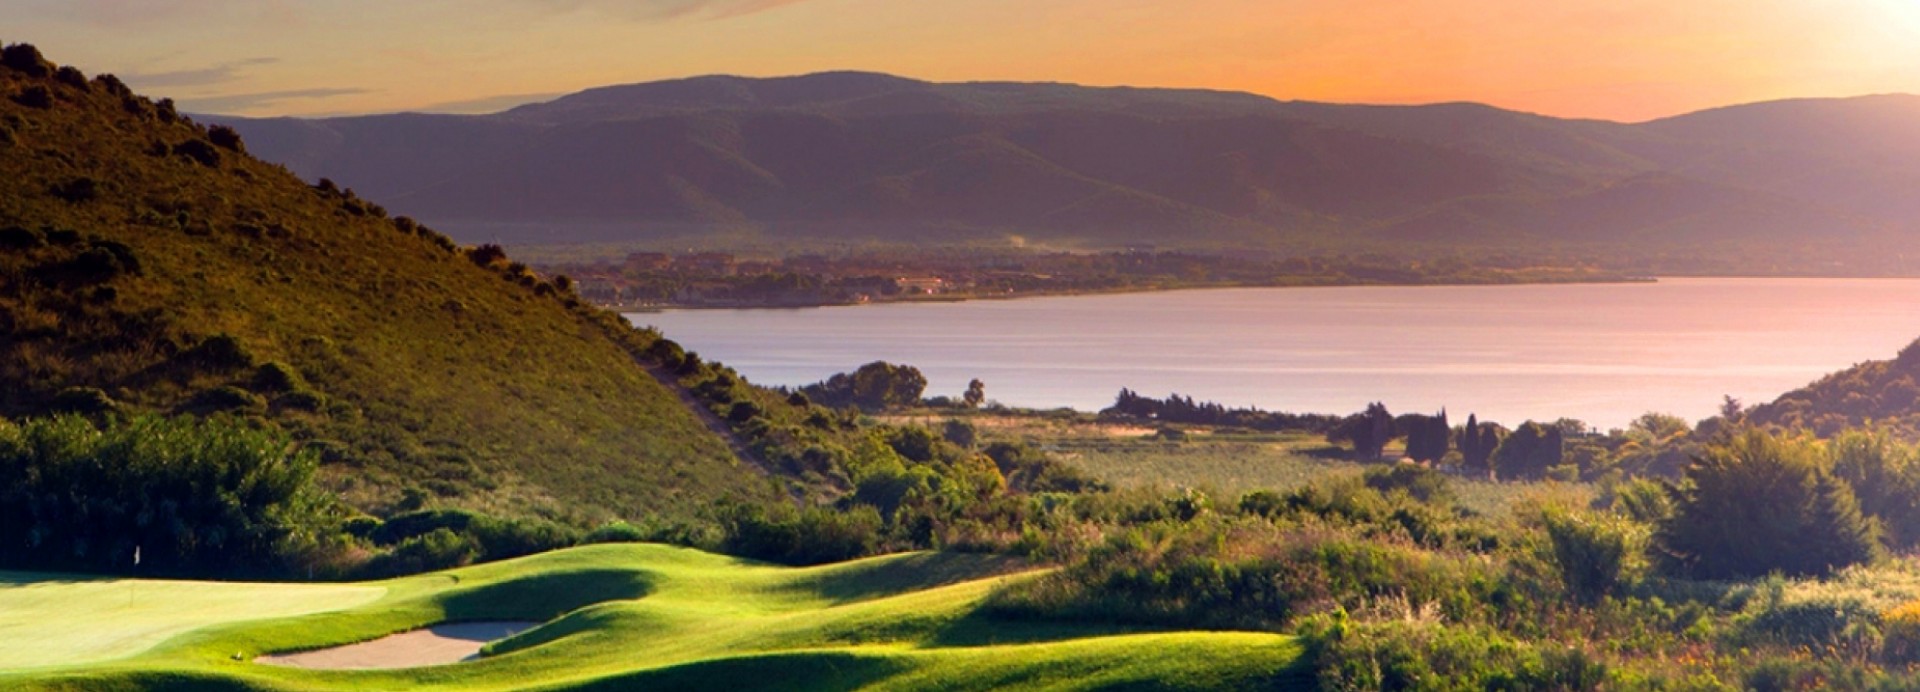 Argentario Golf Club  | Golfové zájezdy, golfová dovolená, luxusní golf